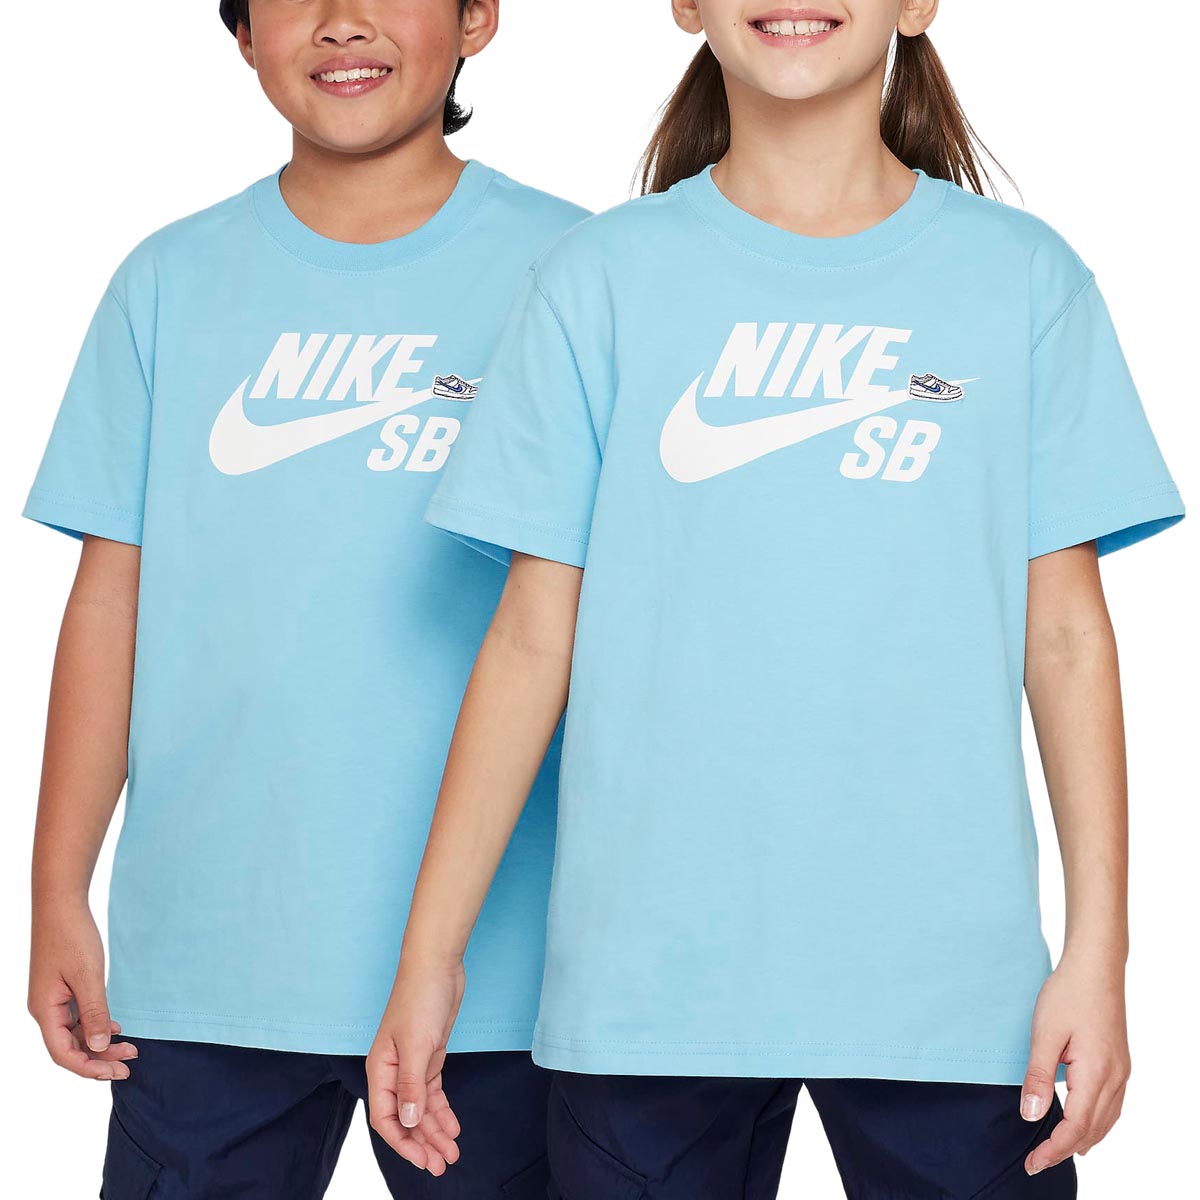 Nike SB Sportswear T-Shirt - Aquarius Blue image 2